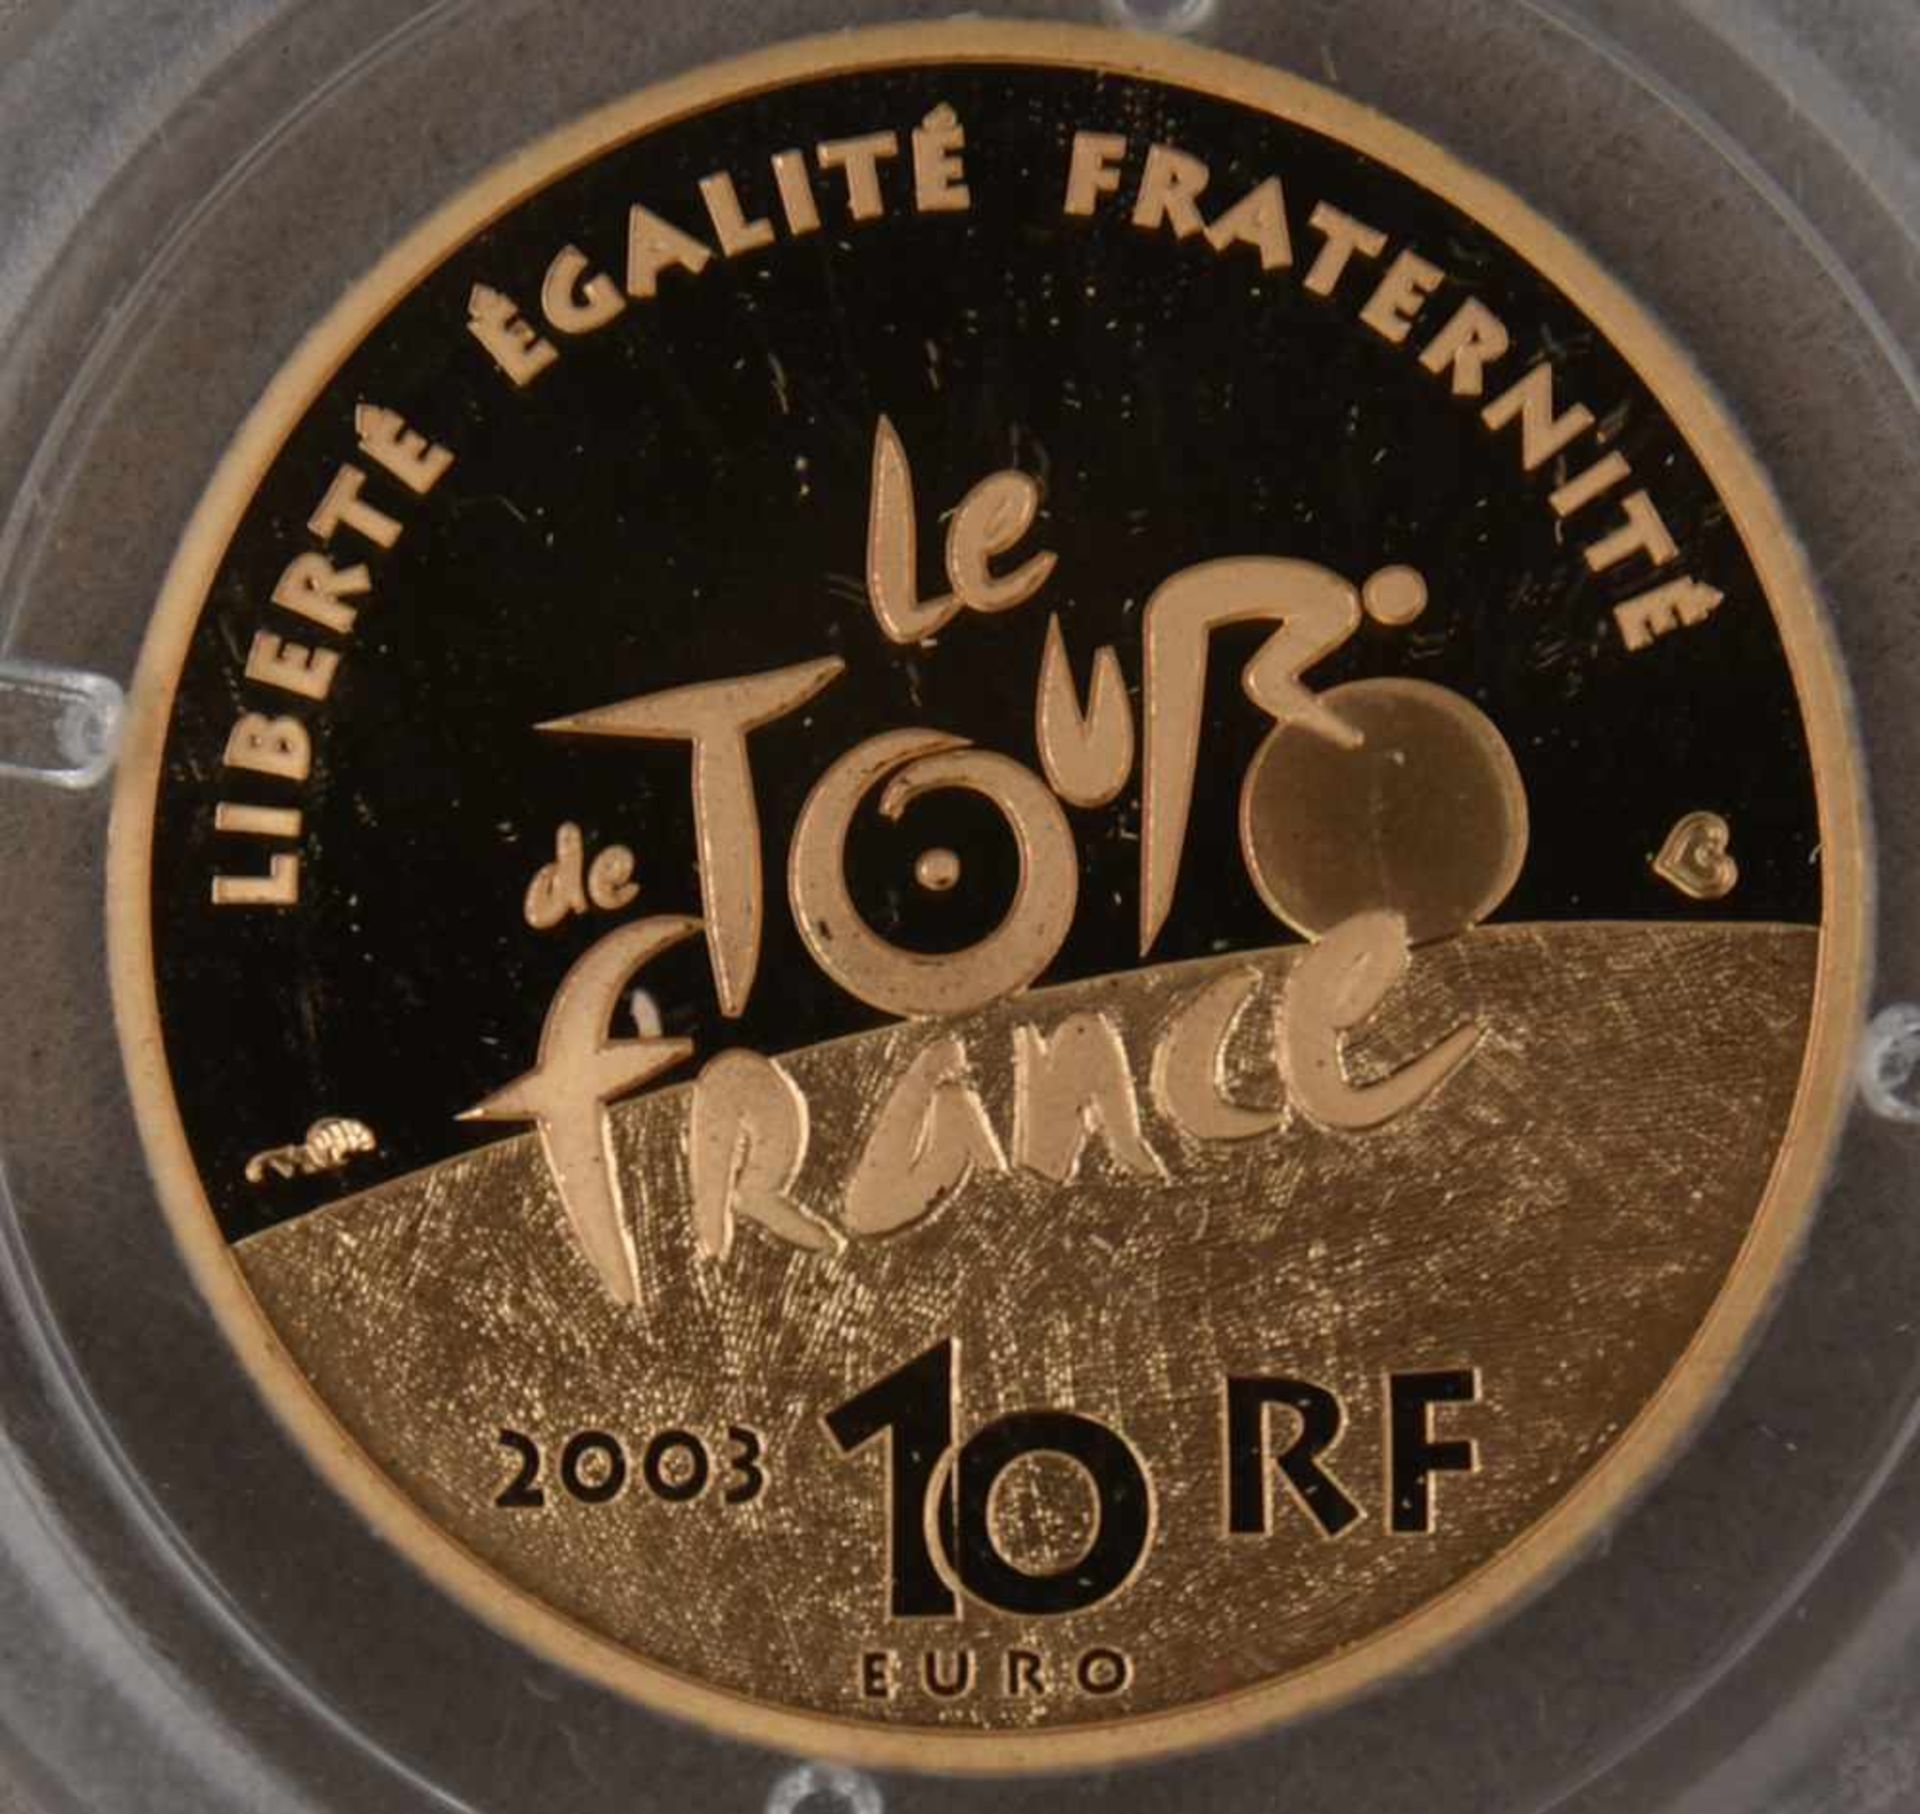 GOLDMÜNZEN, 2 x Frankreich/Finnland, 20 Jhd. (16)1 x 100 Euro Münze Finnland 8,64 gramm 900er Gold - Bild 3 aus 4